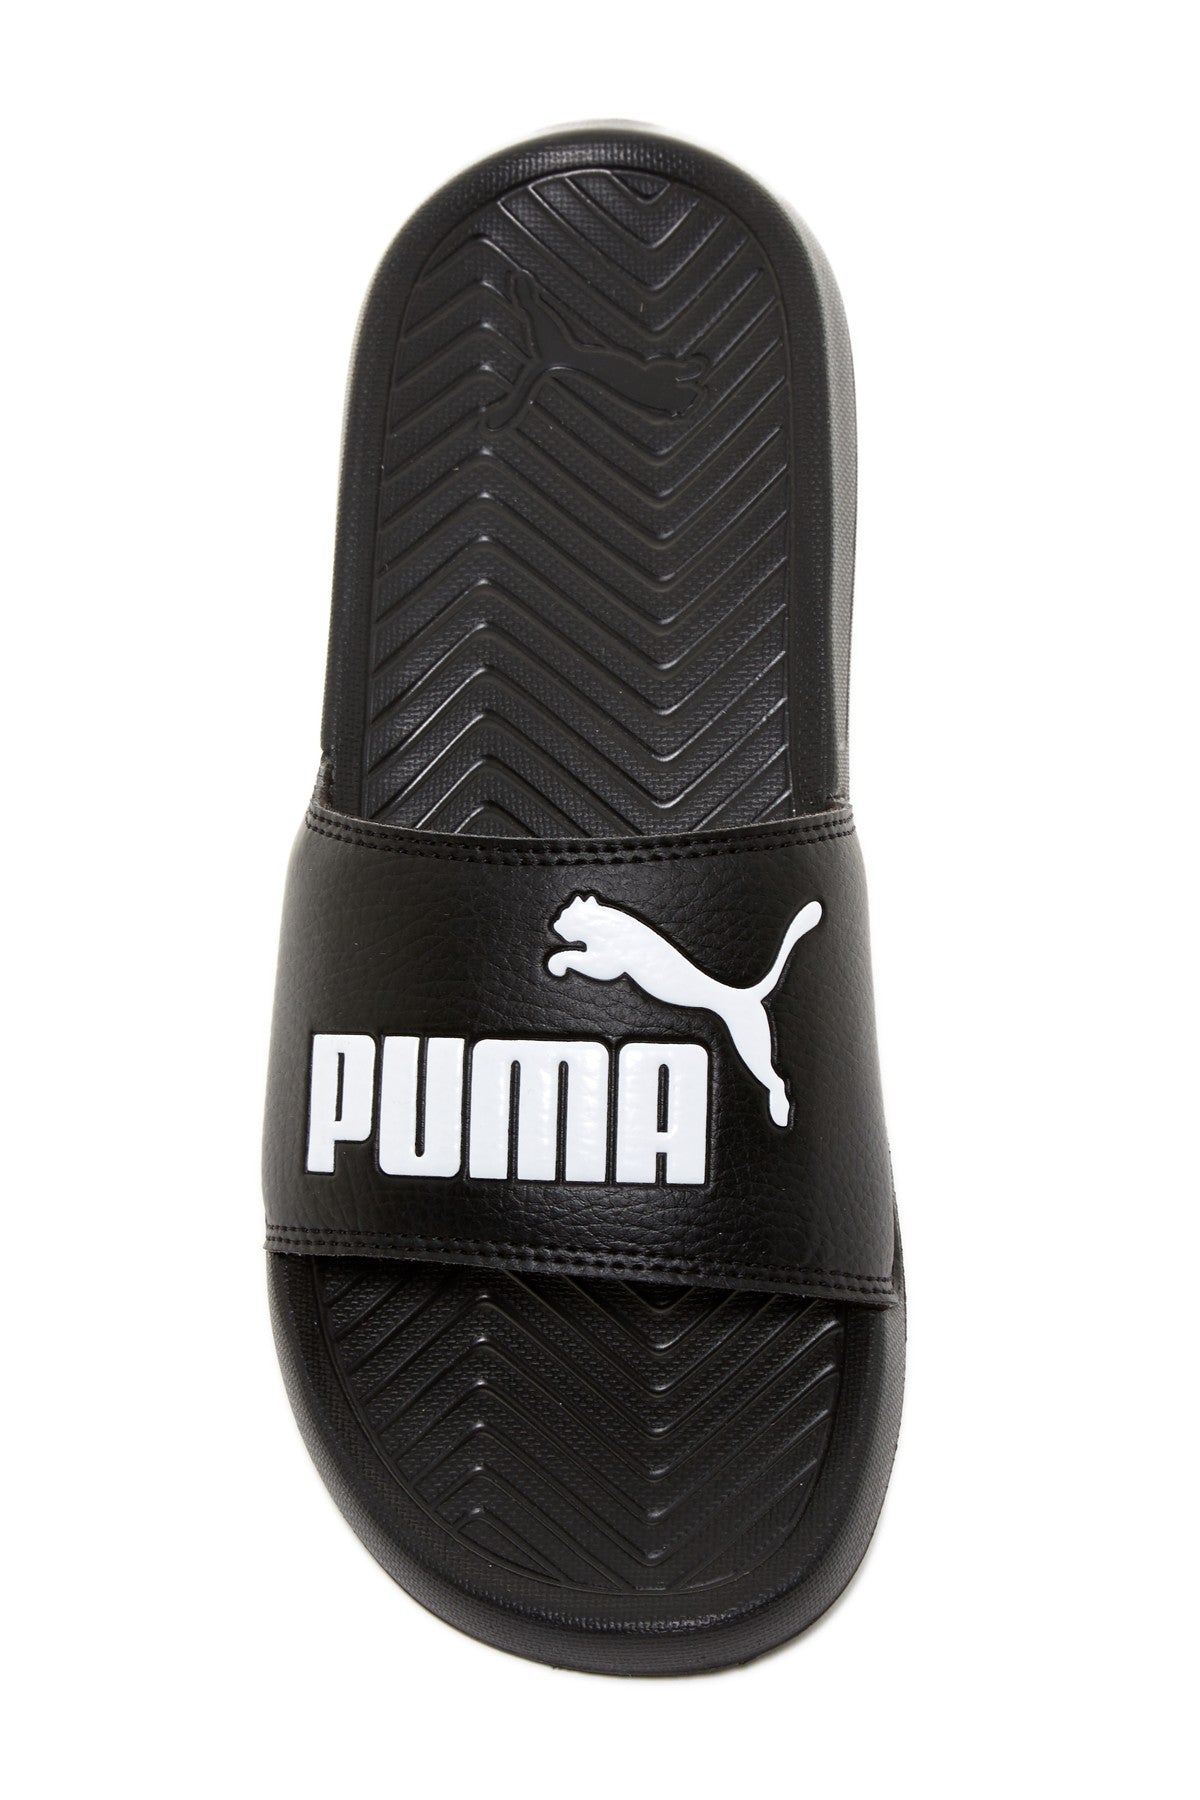 black and white puma slides